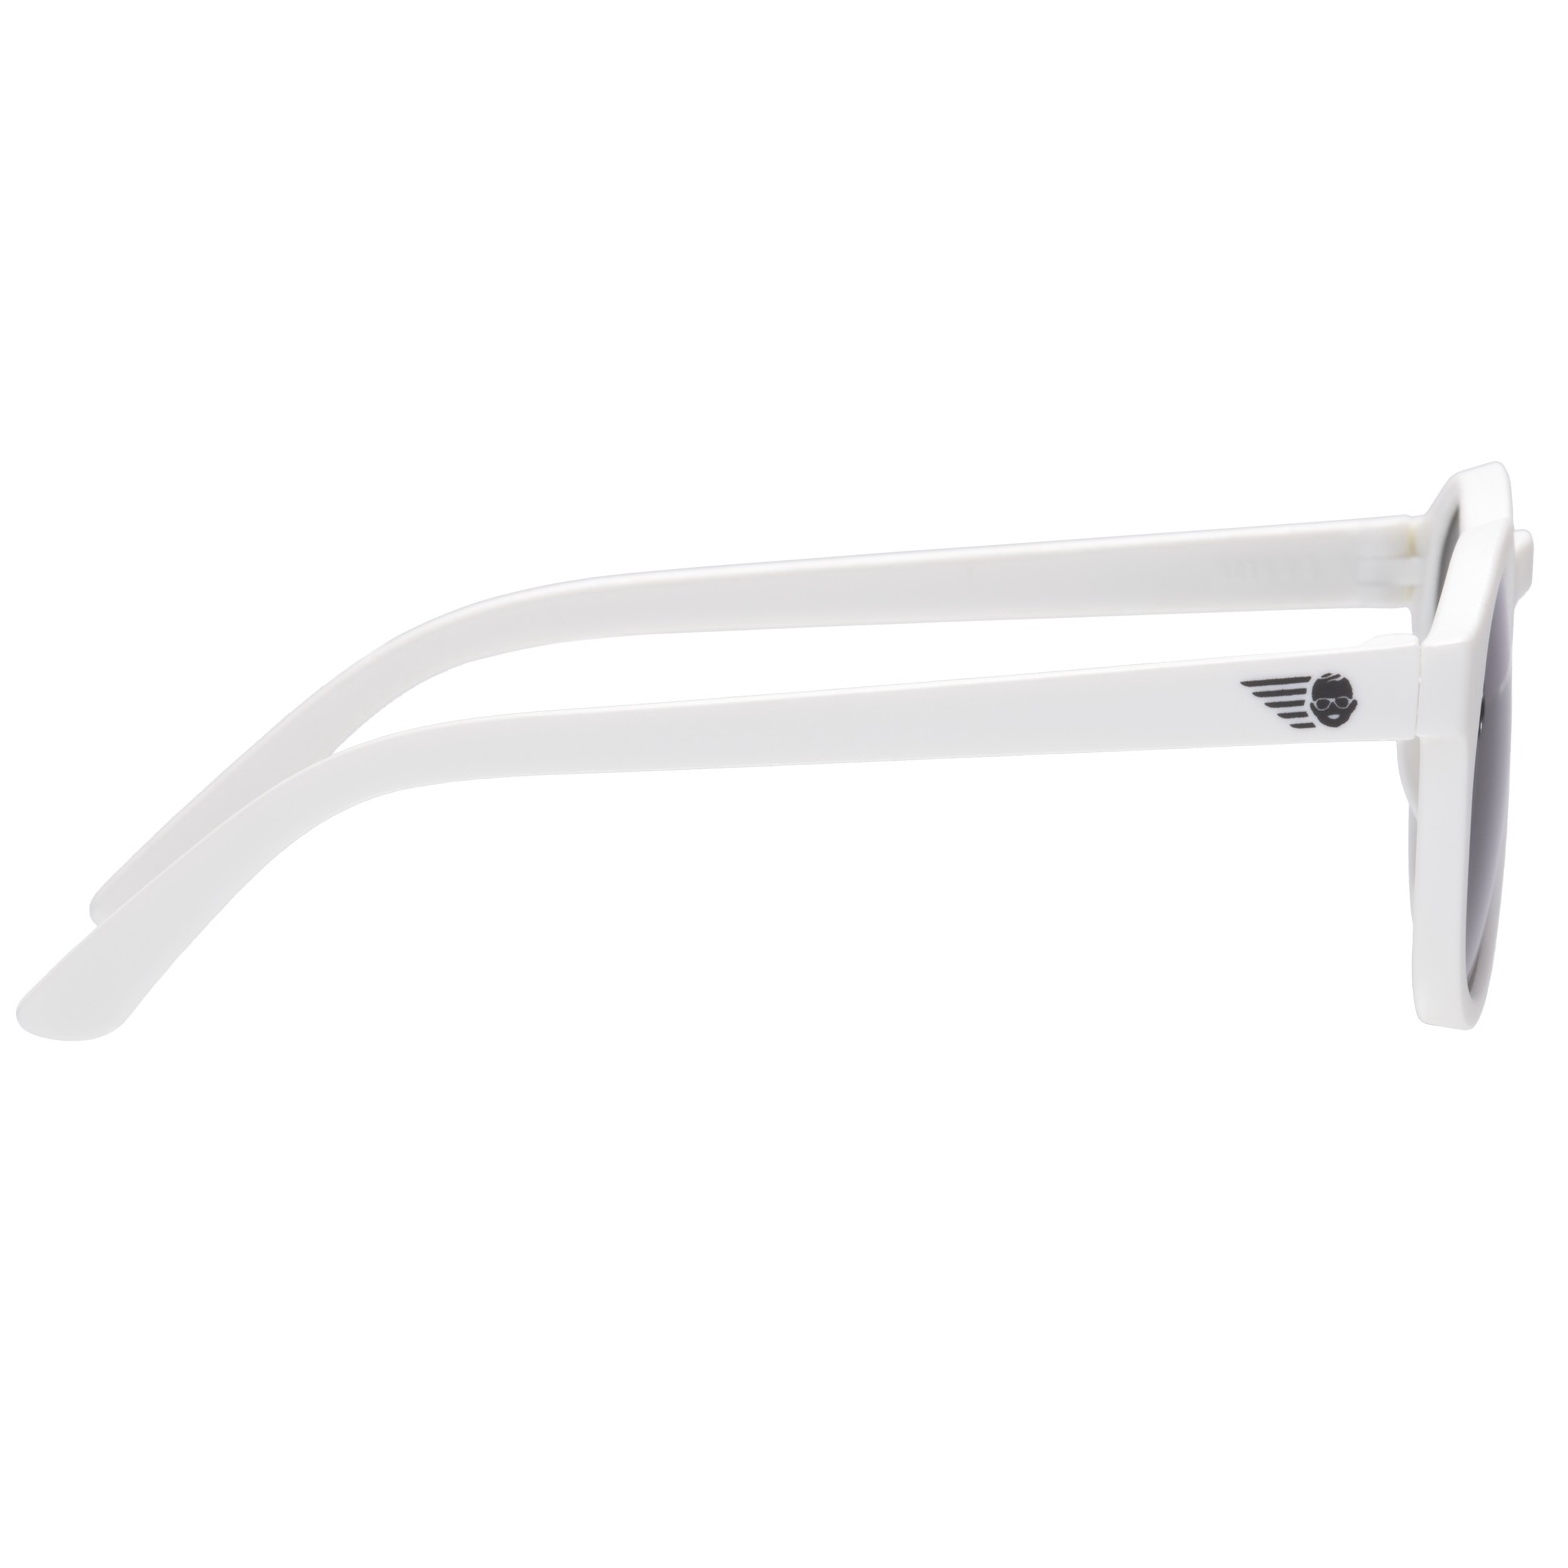 Солнцезащитные очки - Babiators Original Keyhole. Шаловливый белый/Wicked White, белые/дымчатые, Junior  